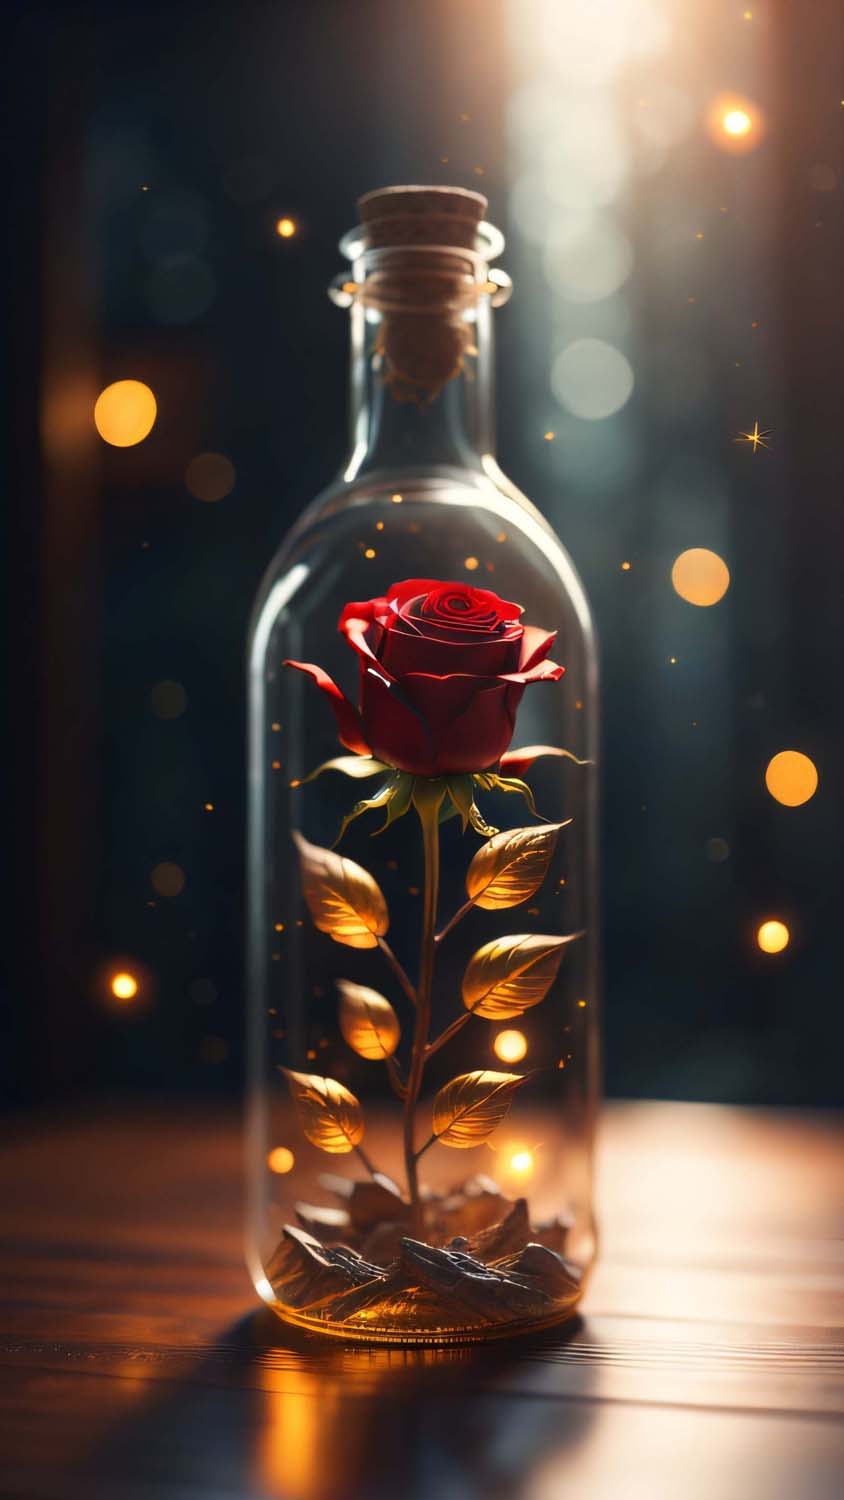 Rose in Jar iPhone Wallpaper 4K